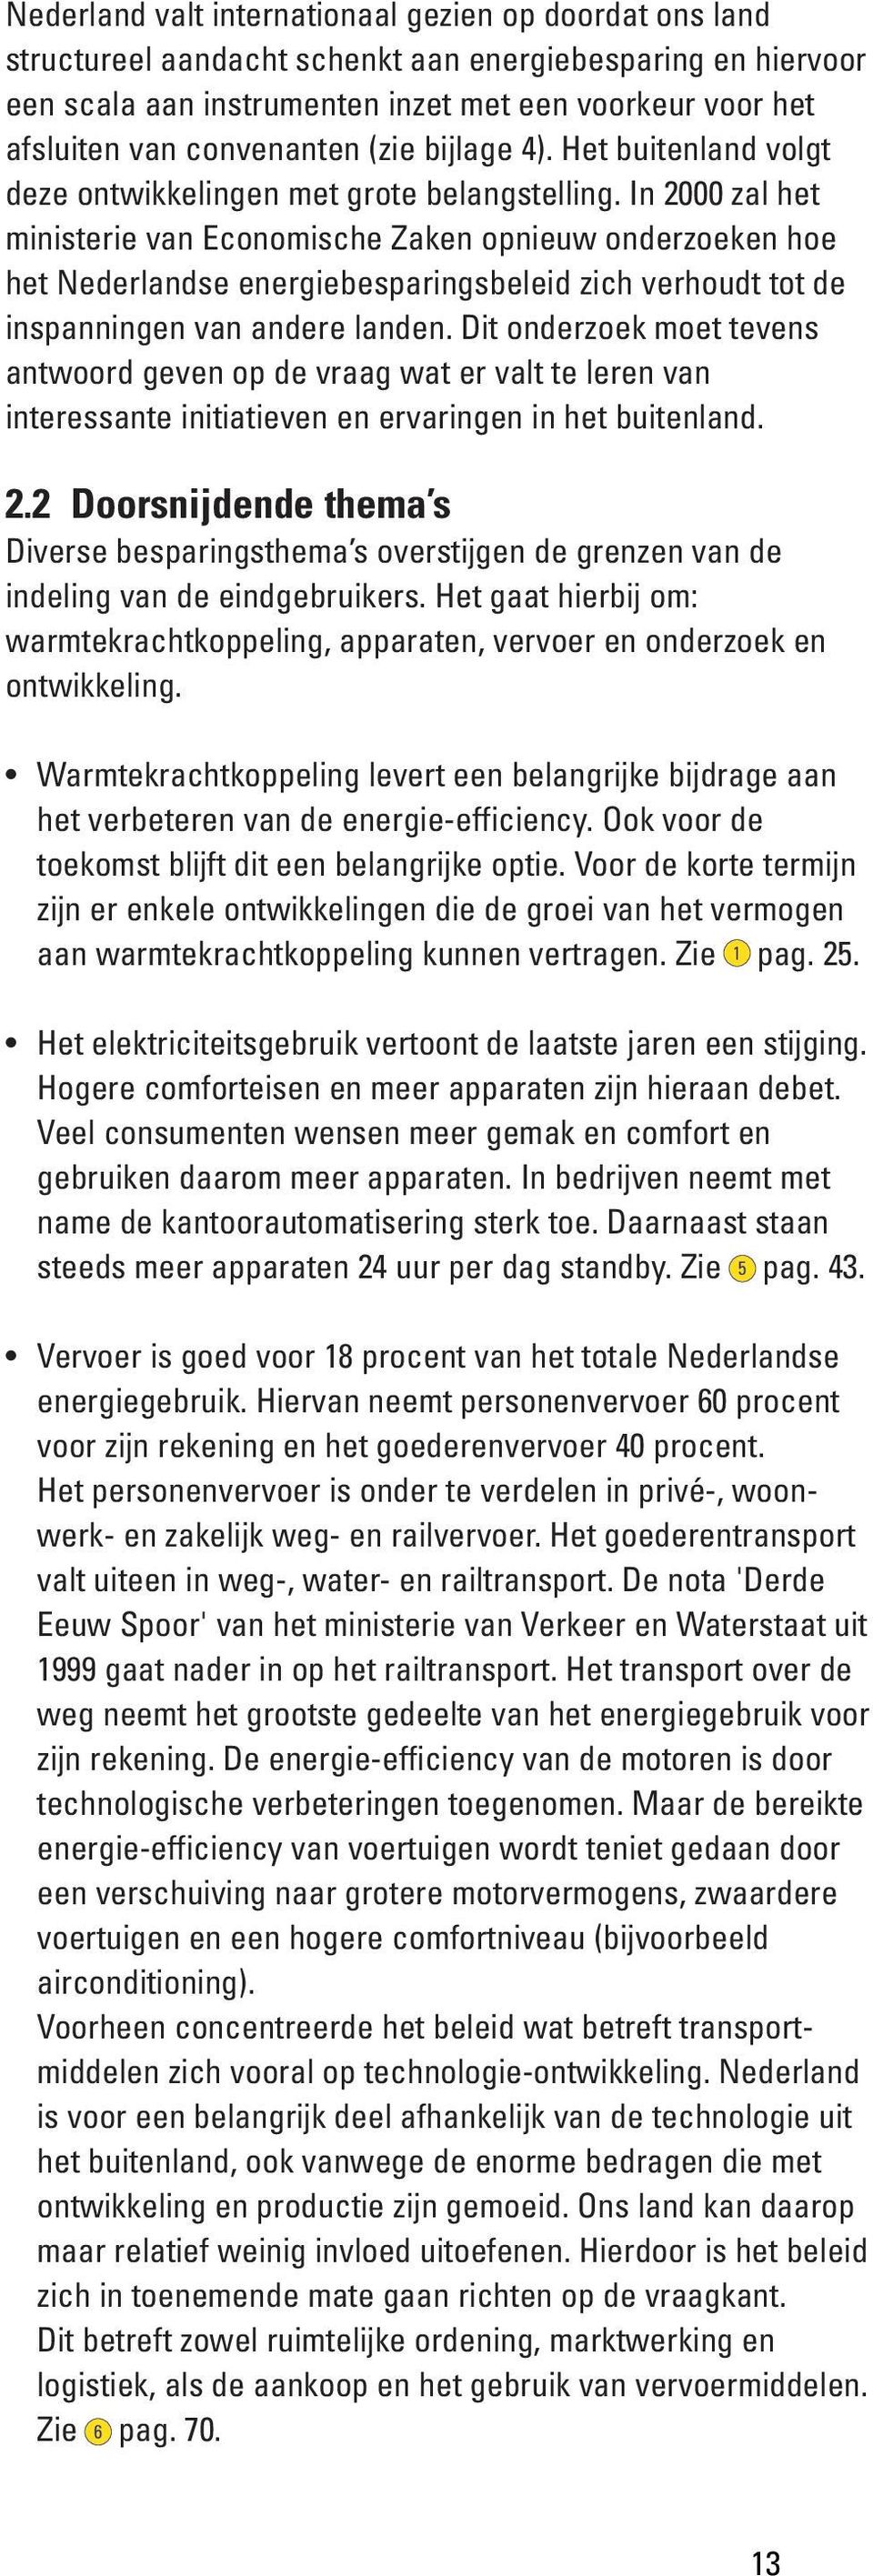 In 2000 zal het ministerie van Economische Zaken opnieuw onderzoeken hoe het Nederlandse energiebesparingsbeleid zich verhoudt tot de inspanningen van andere landen.